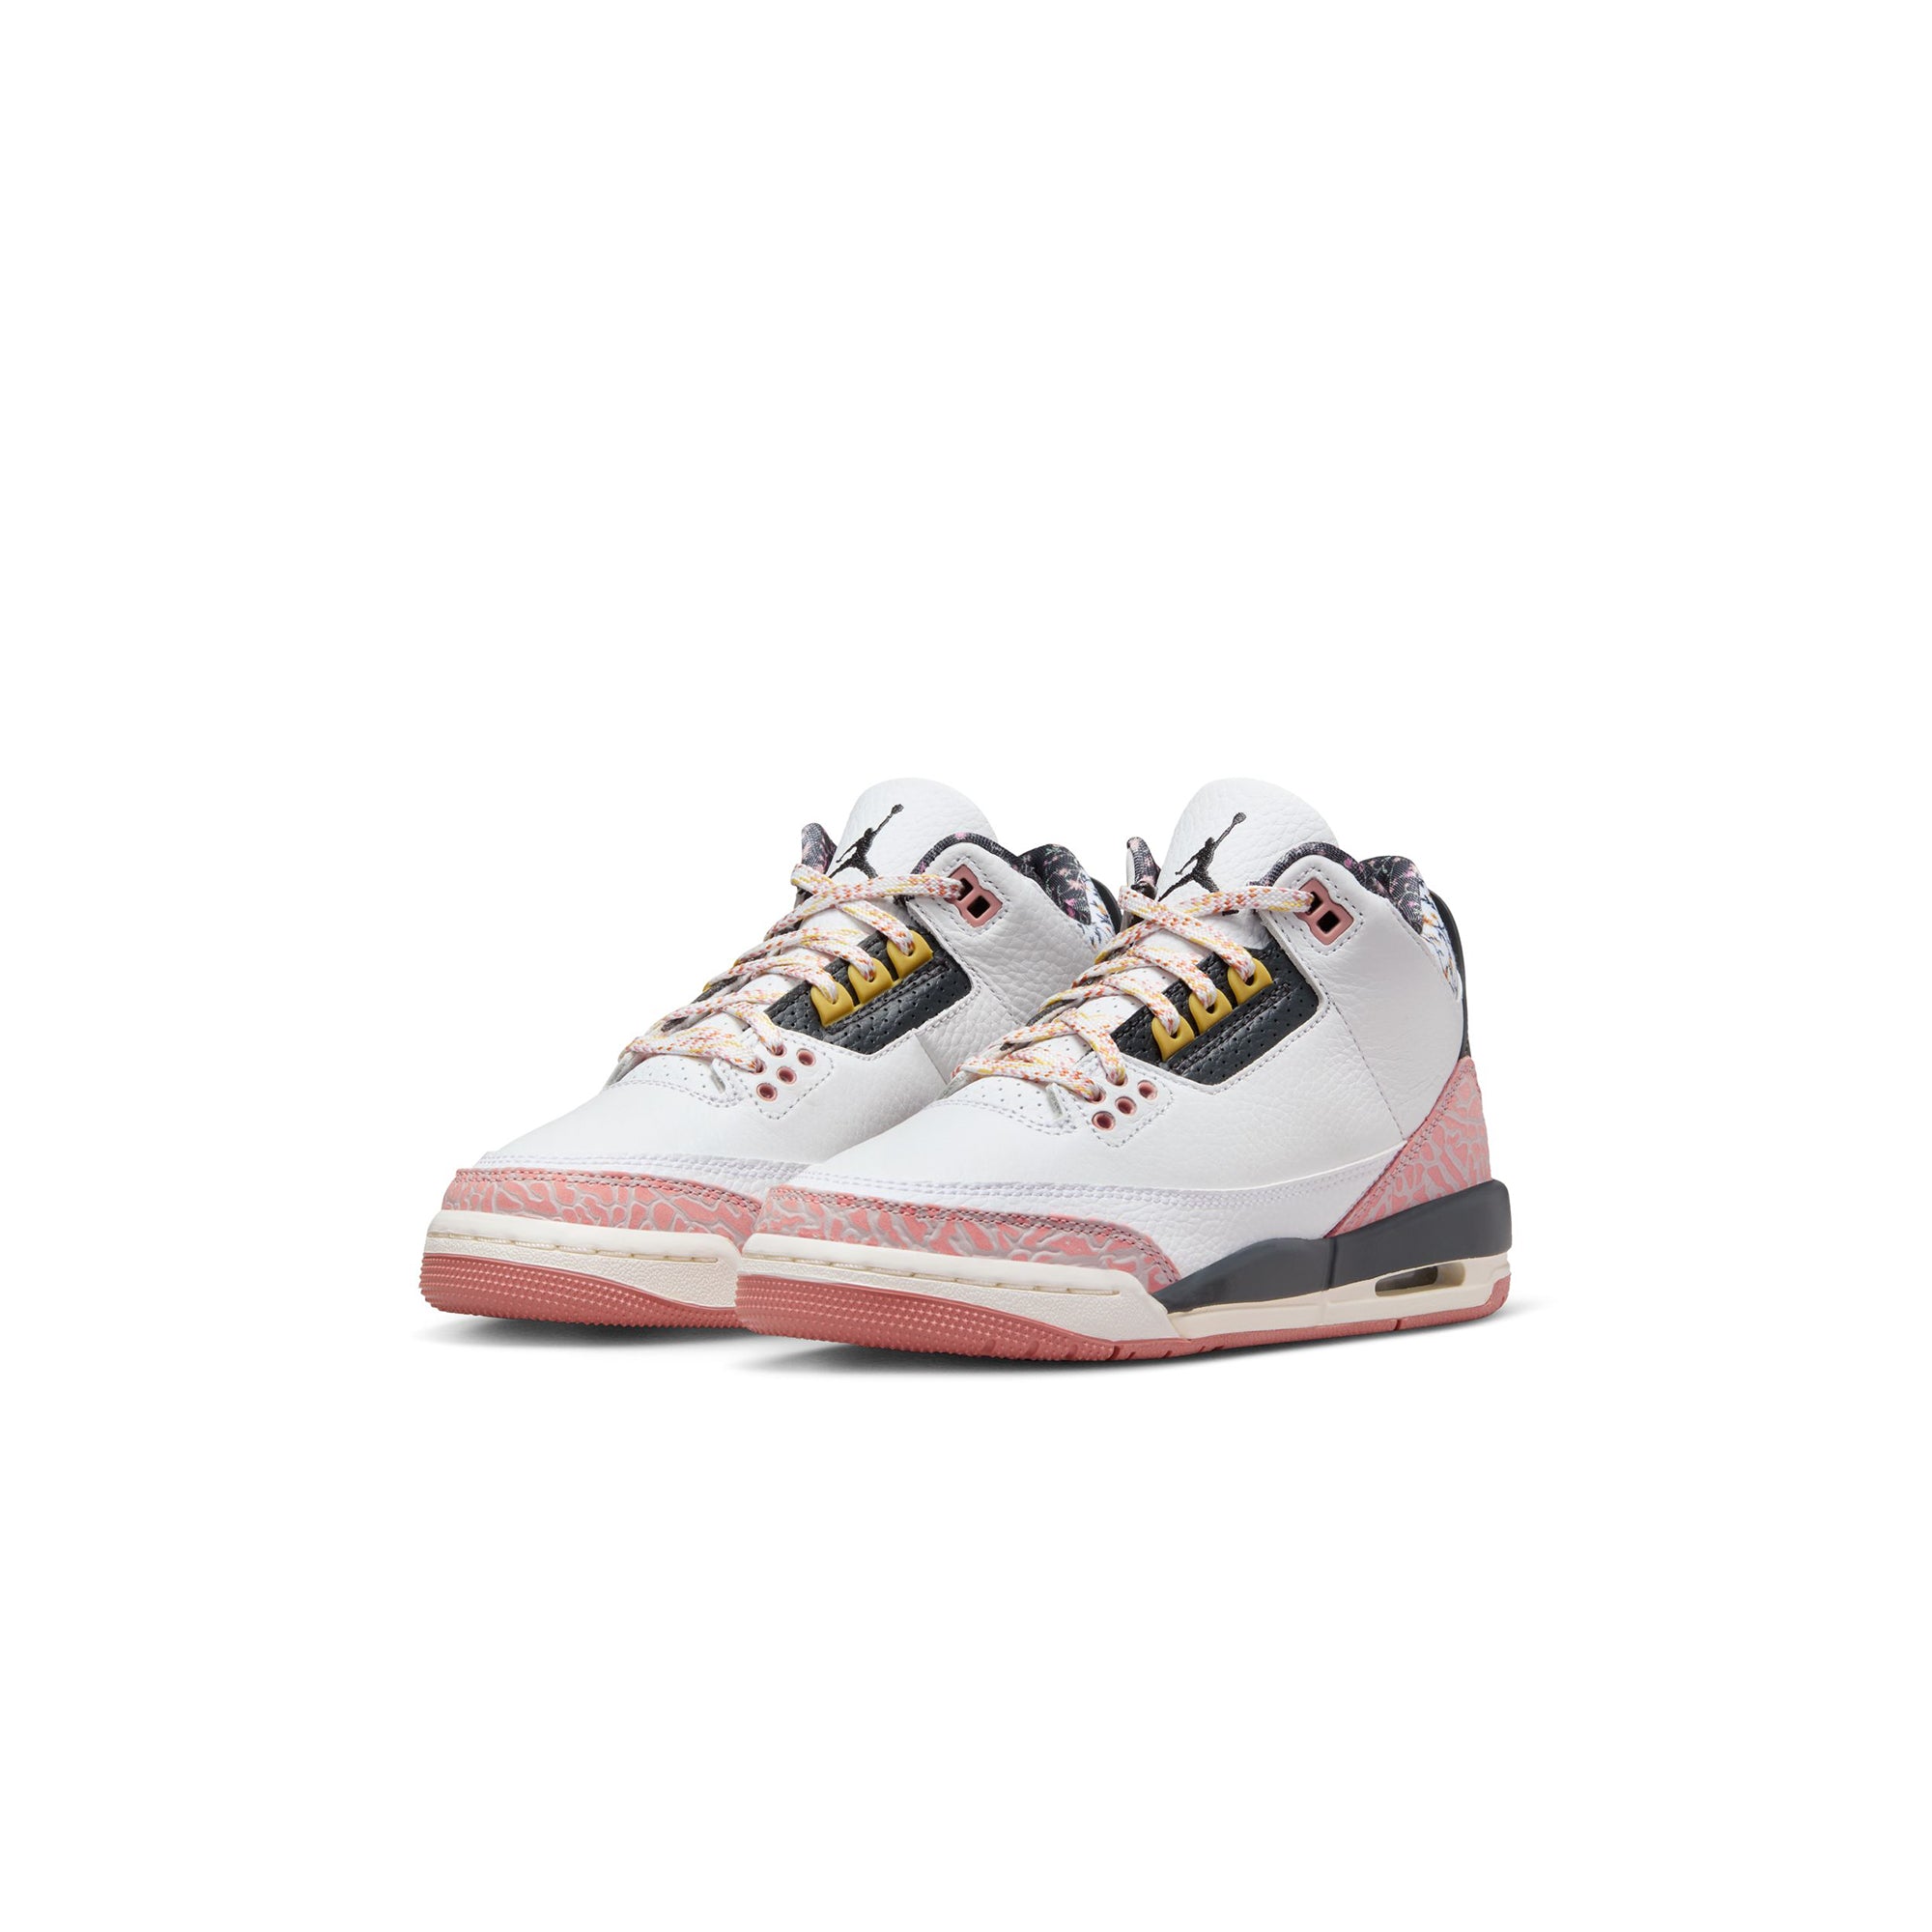 Air Jordan 3 Kids Retro Shoes